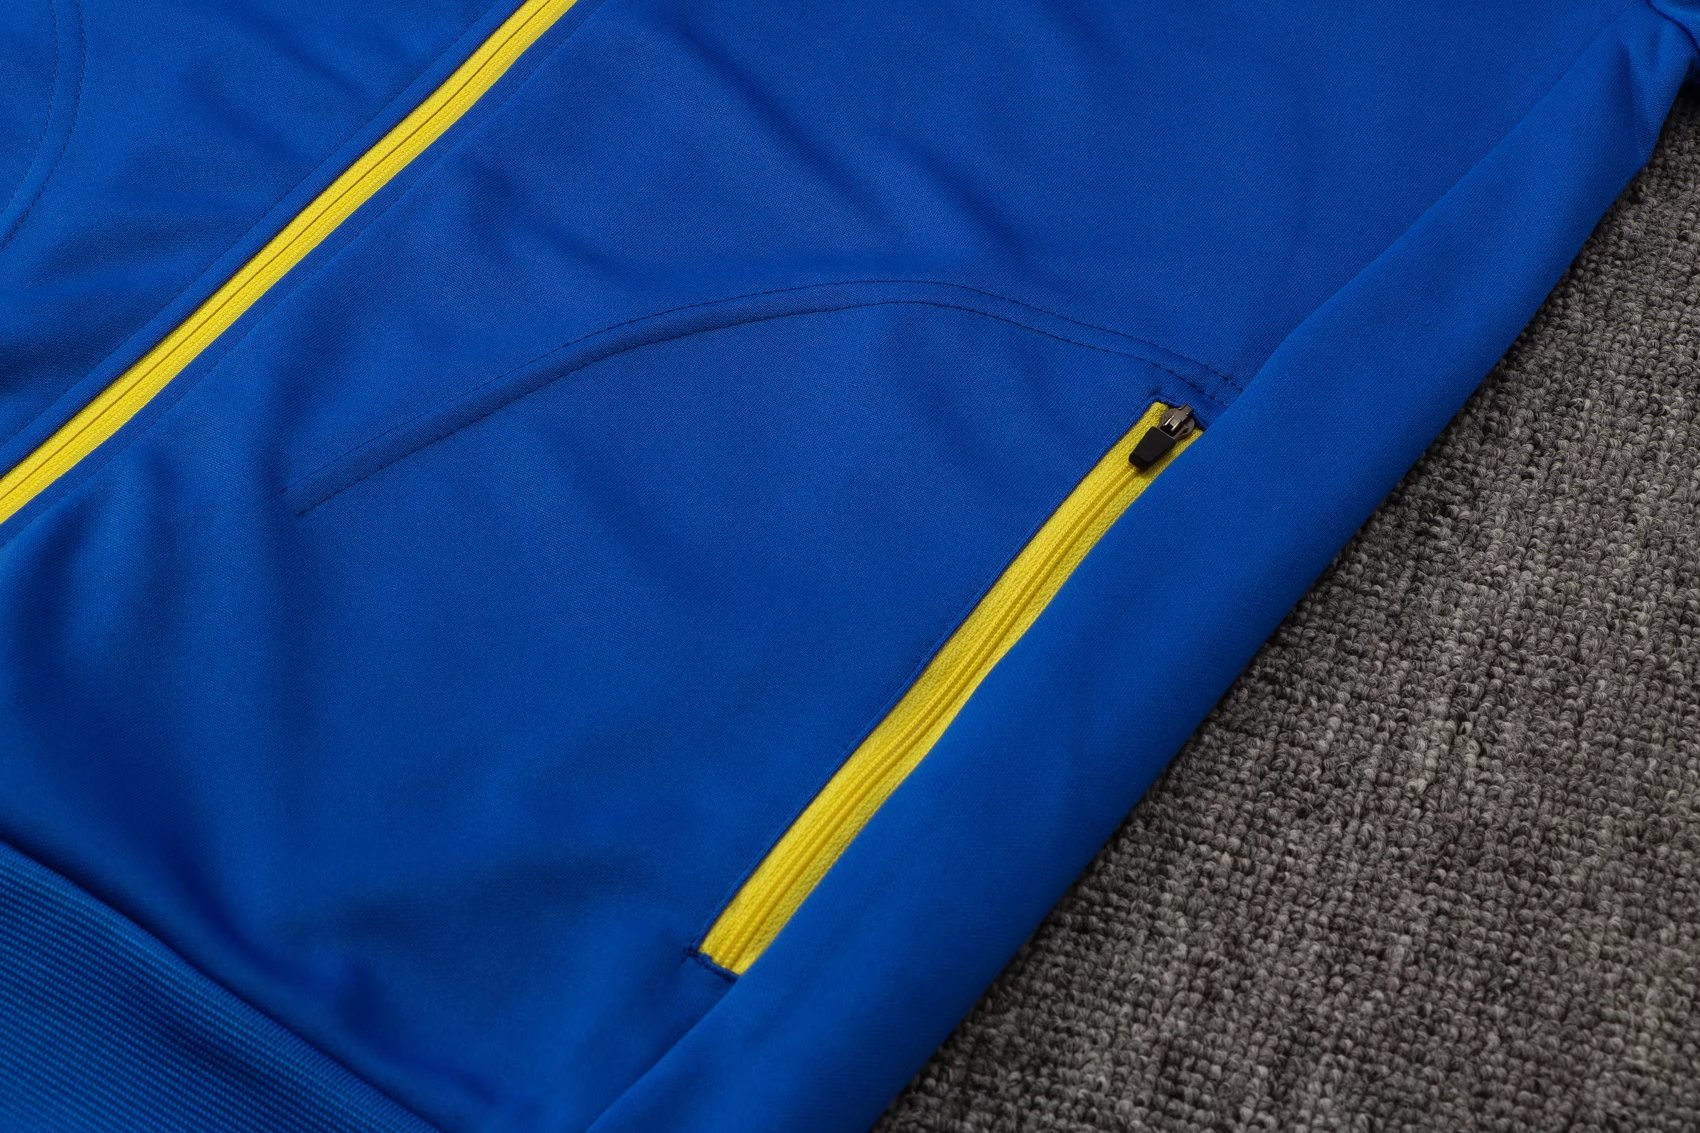 Boca Juniors Soccer Training Suit Jacket + Pants Blue Mens 2021/22